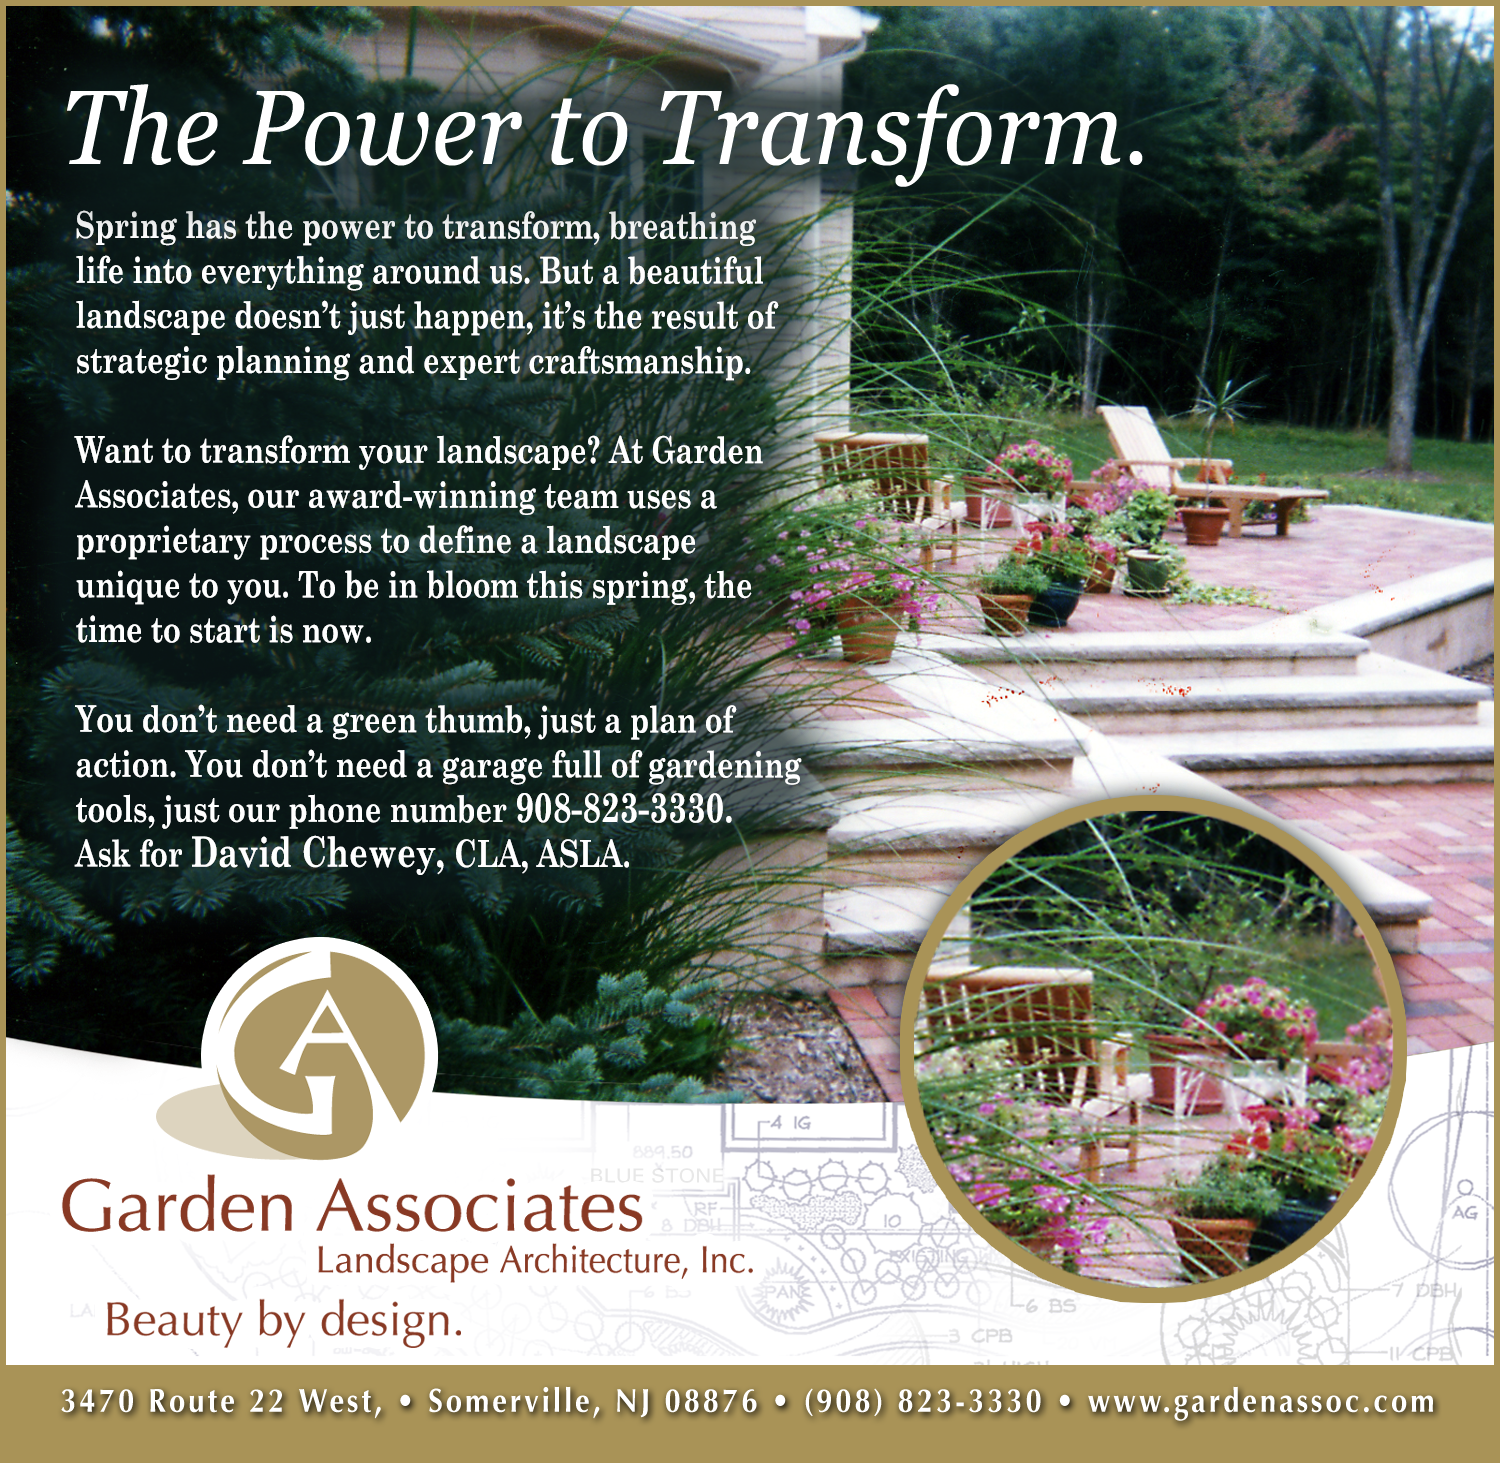 Garden Associates Branding by Delia Associates